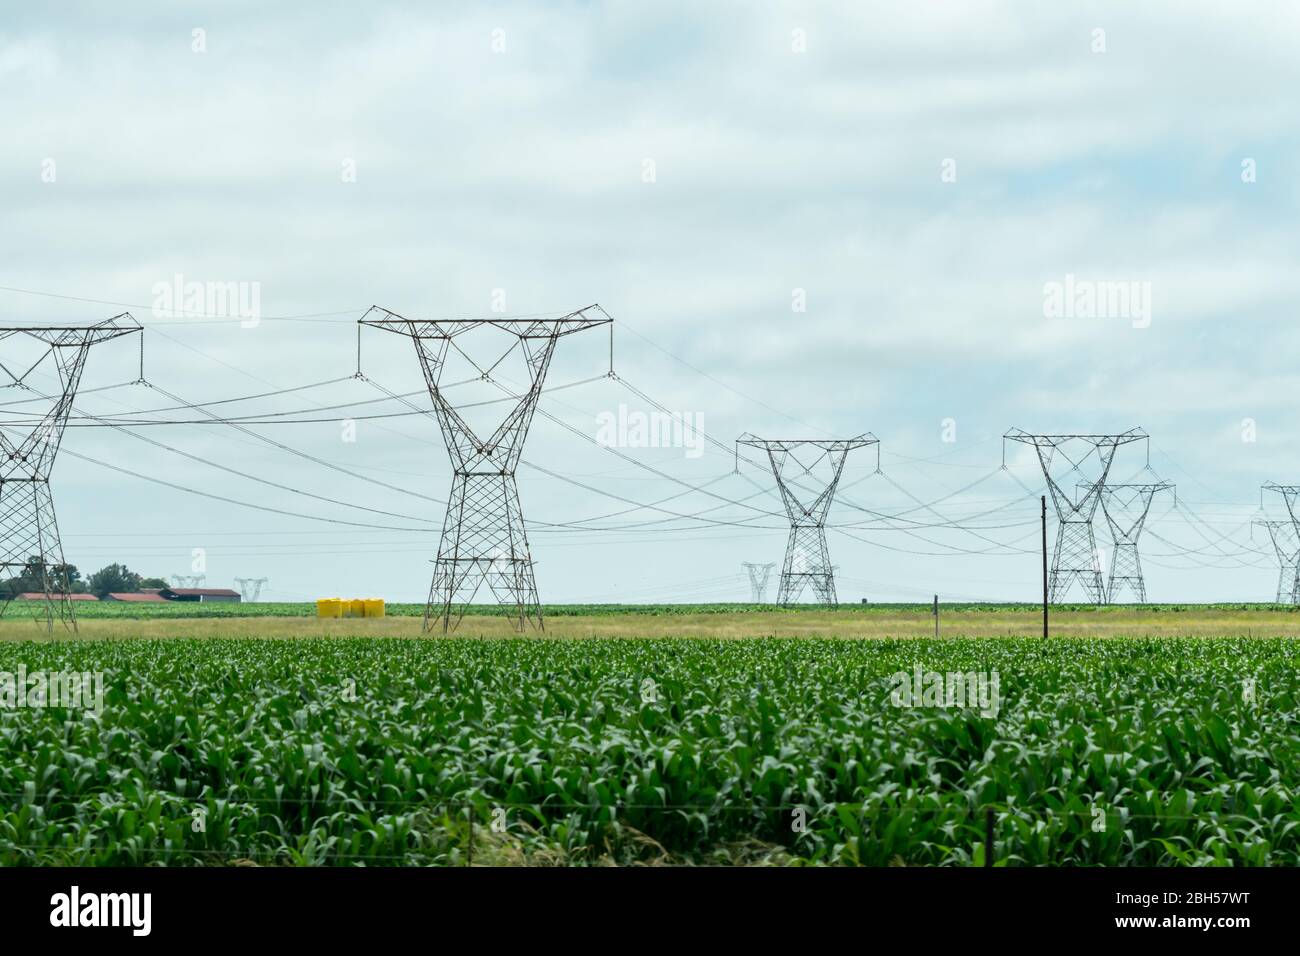 Hochspannungs-Strom oder elektrische Pylone und Kabel in einer landwirtschaftlichen Umgebung oder landwirtschaftlichen Bereich in Südafrika Konzept Energie in Afrika Stockfoto